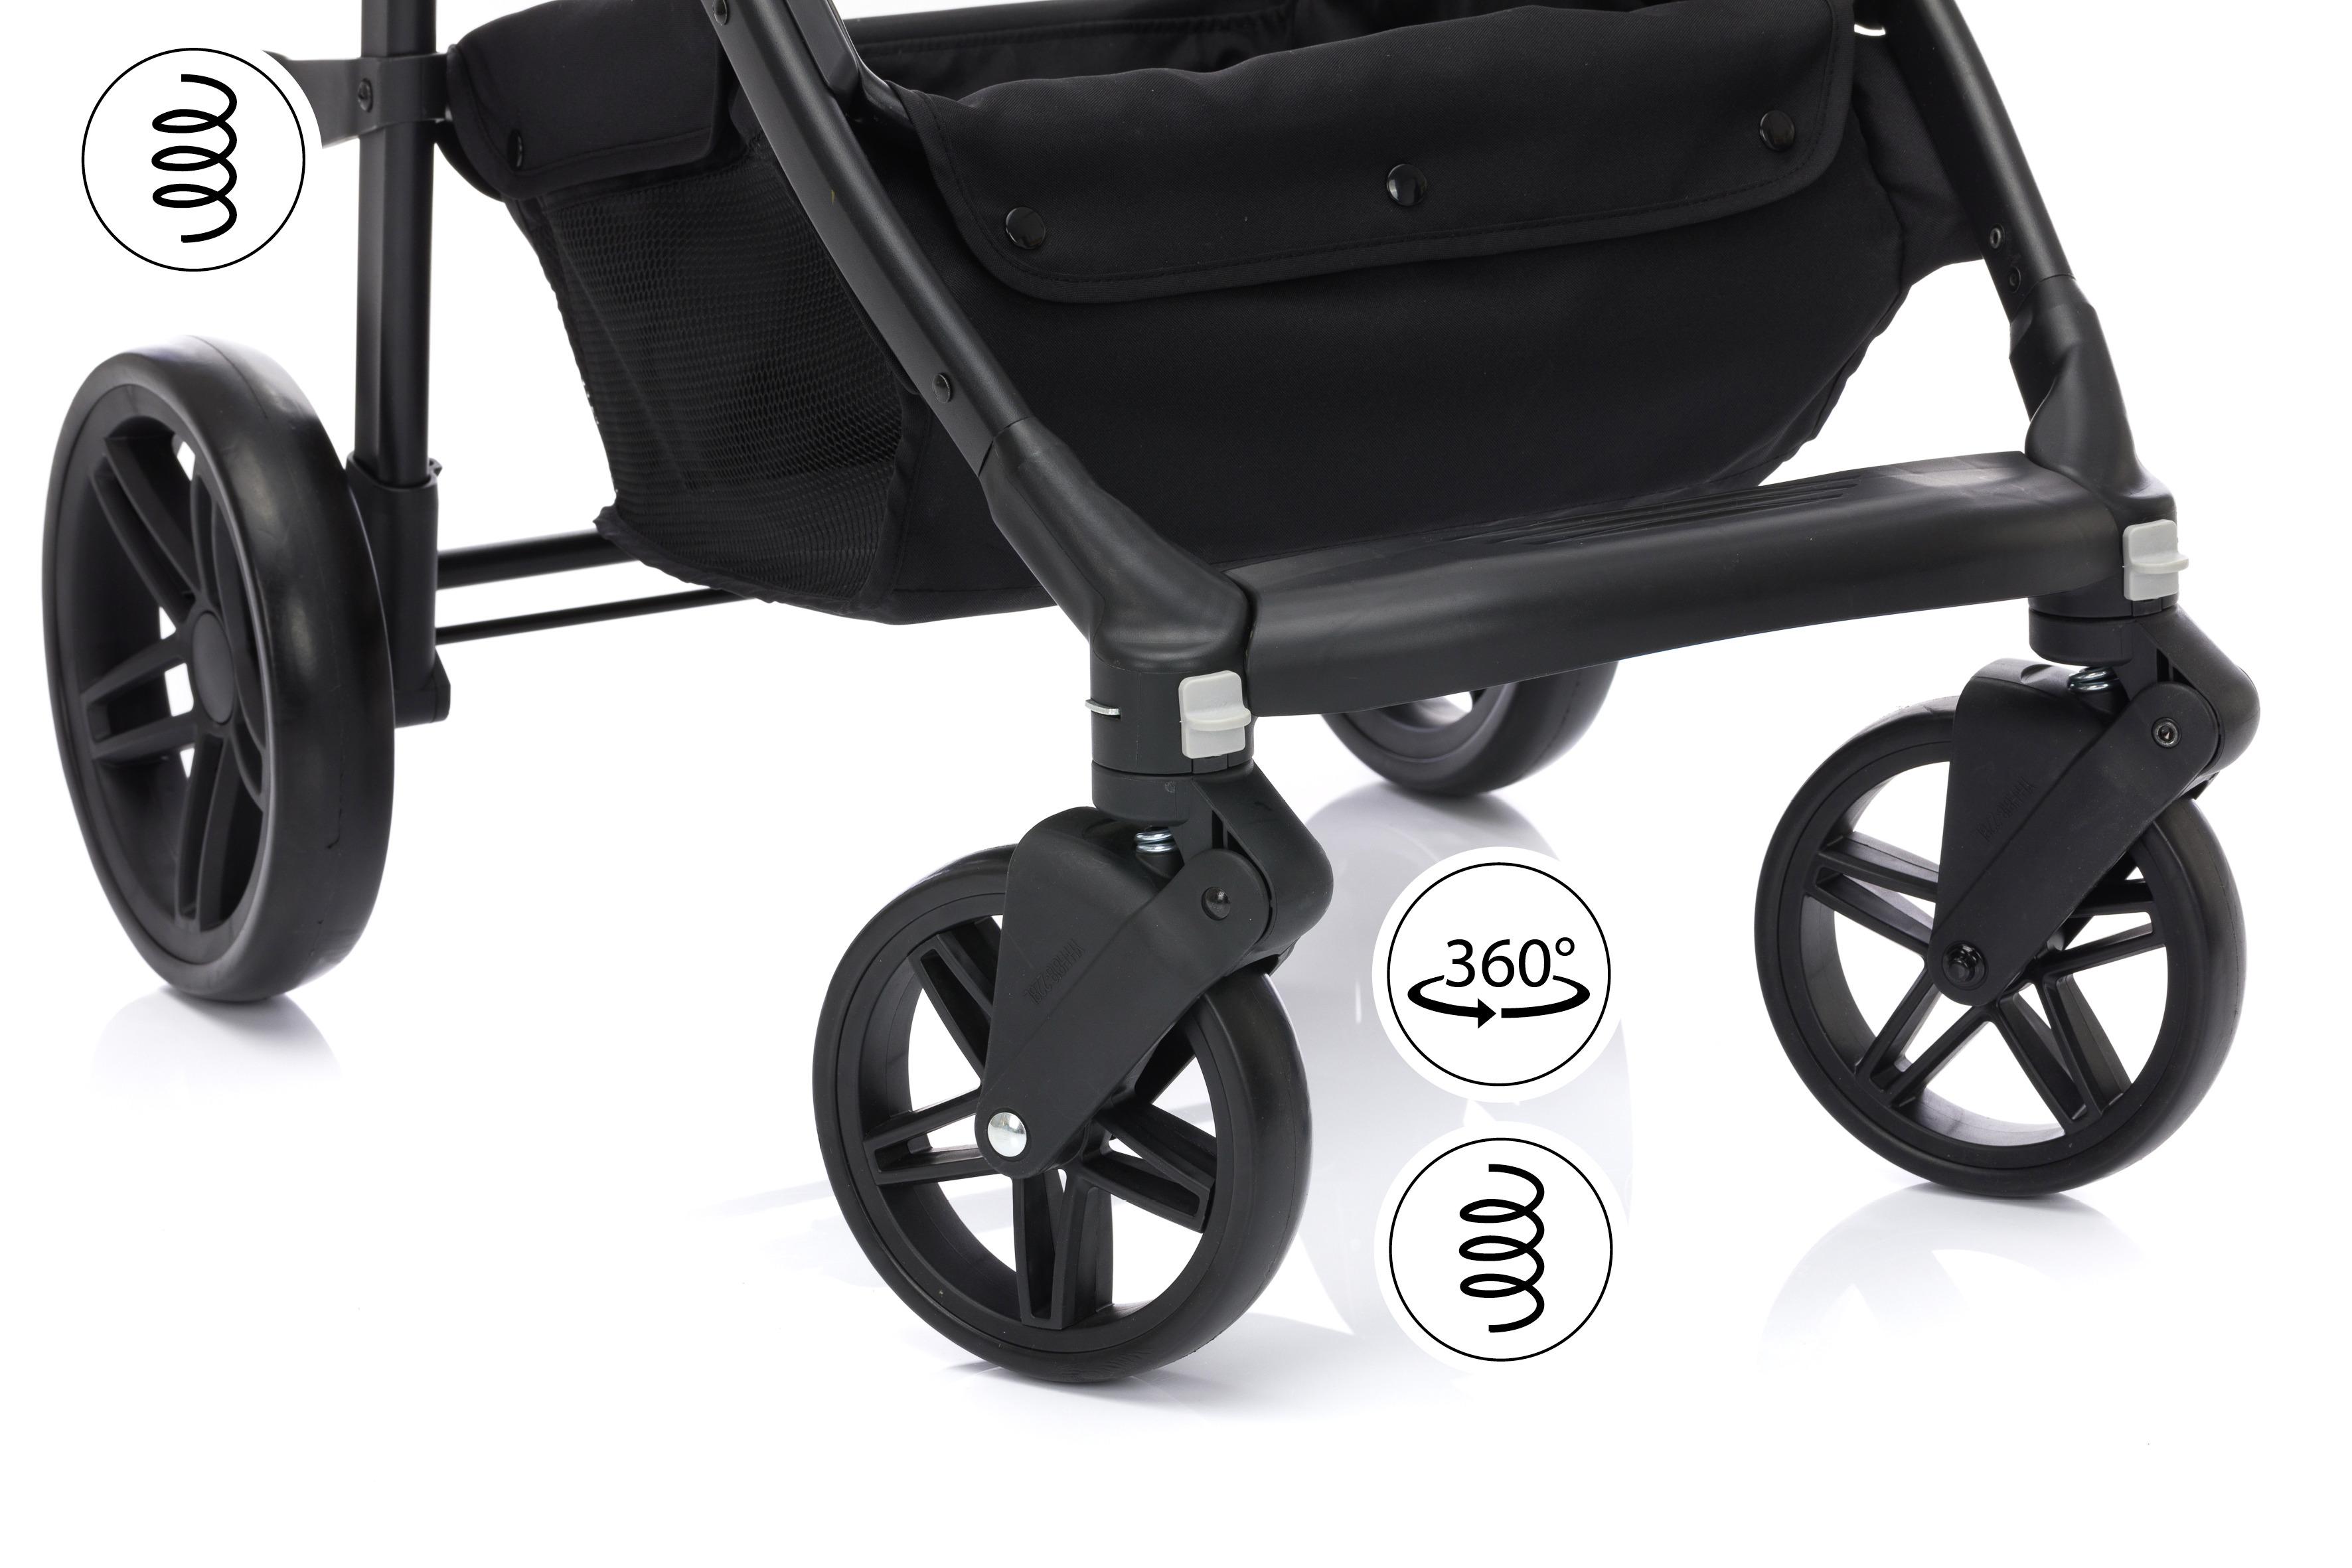 Kinderwagen Balu Premium 3in1 mit Babyschale + Sonnenschutz - Anthrazit/Schwarz, MODERN, Kunststoff/Metall (103/58/104cm) - Fillikid